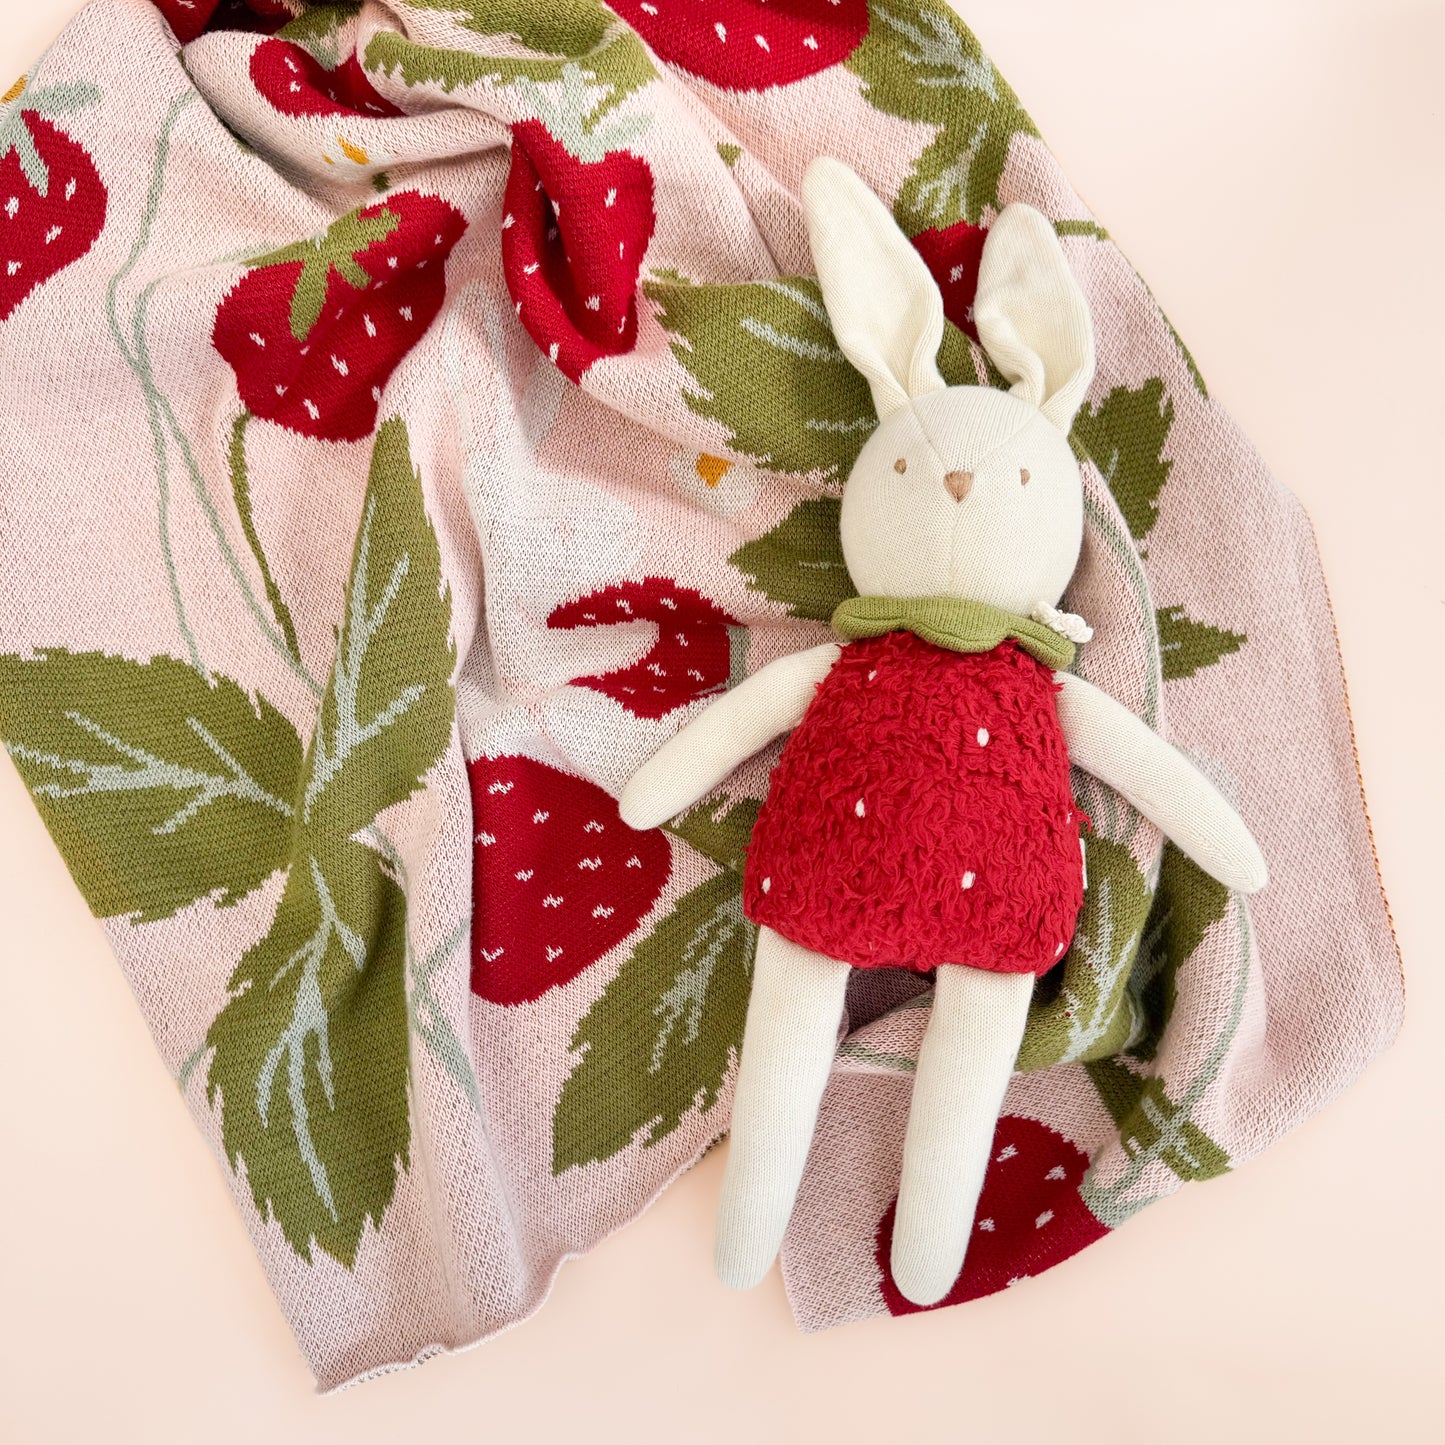 Bailey Bunny Strawberry Plushie Toy